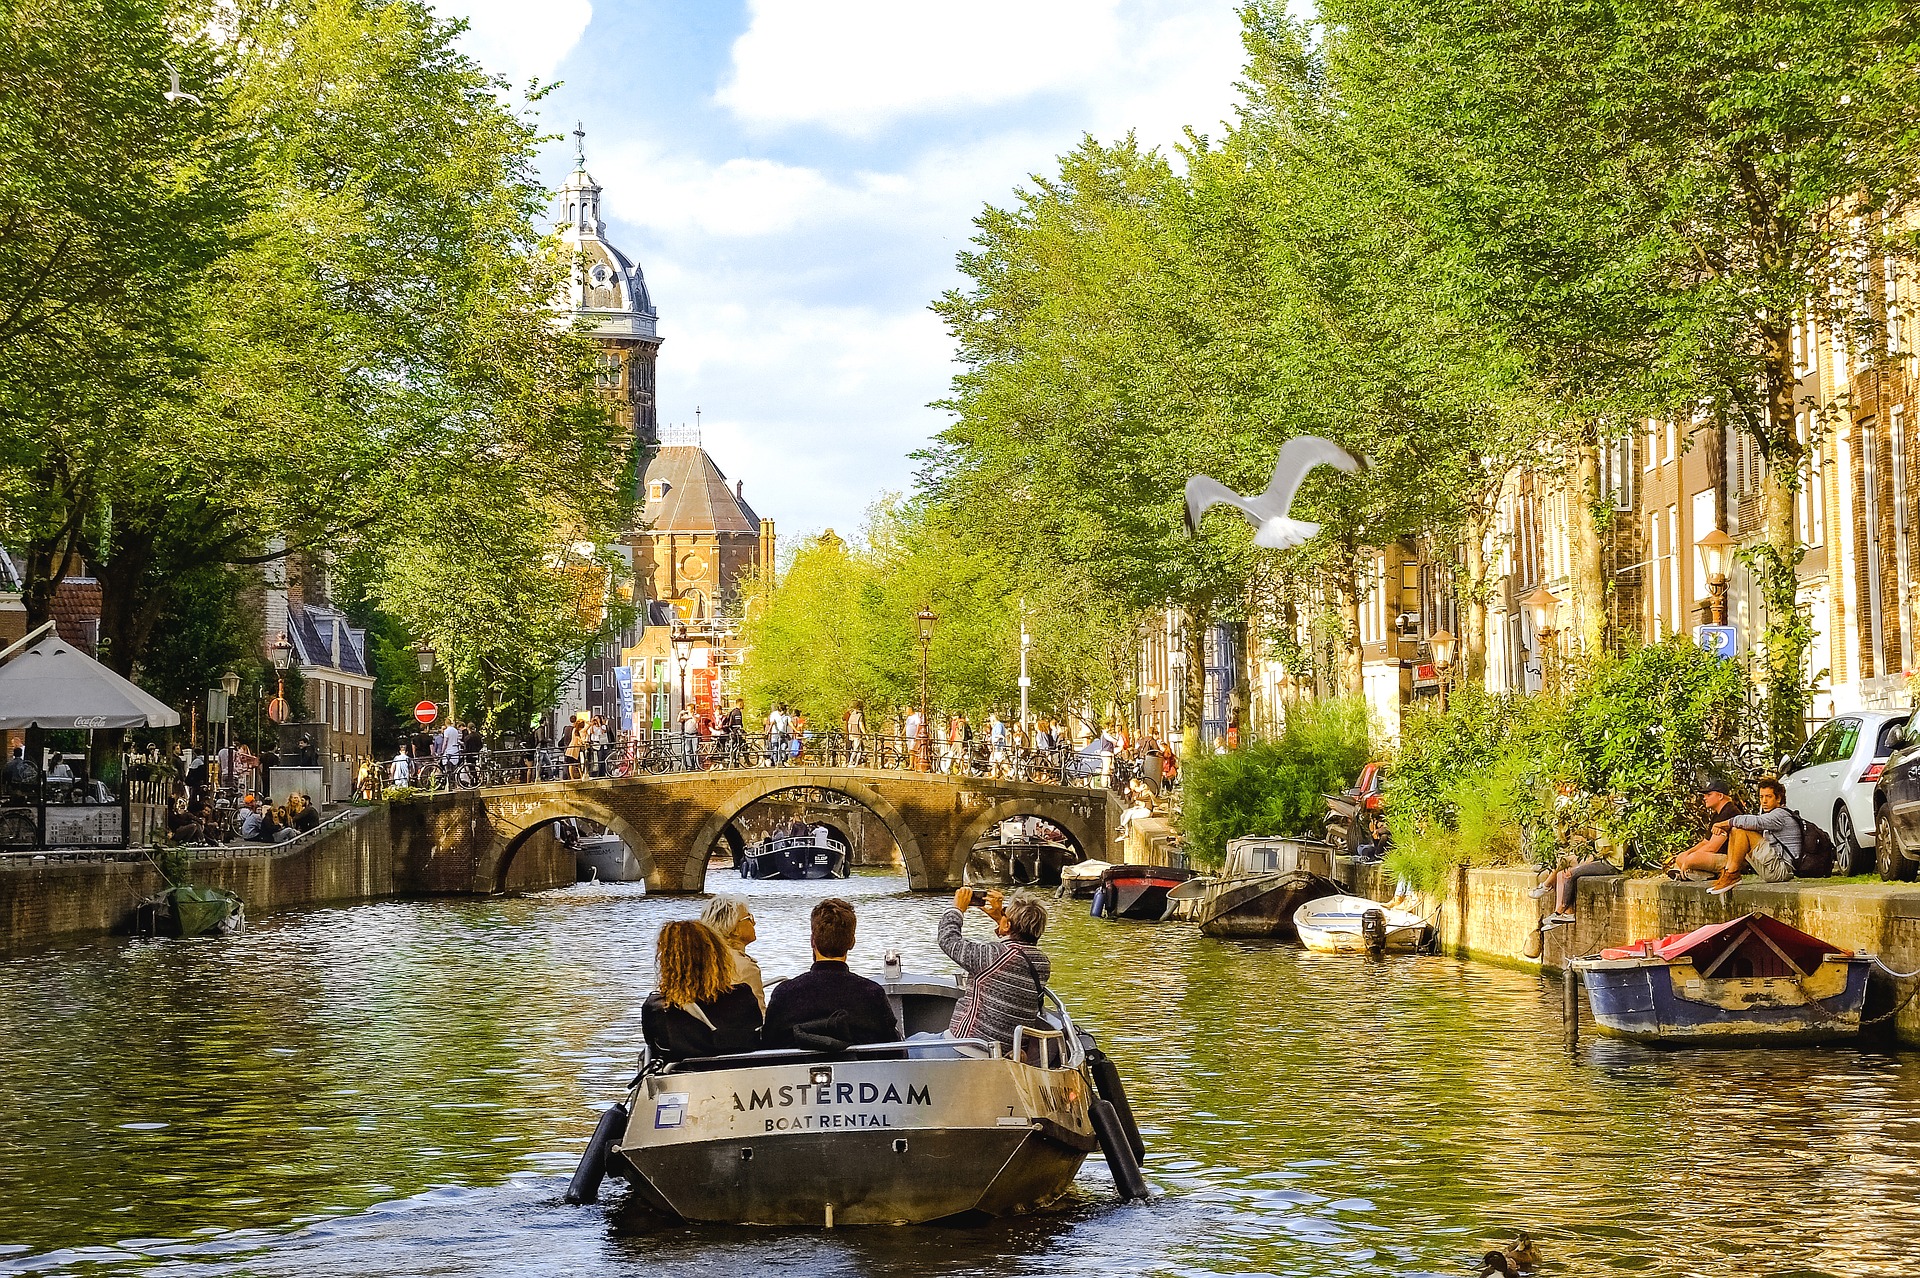 Der Kanal von Amsterdam Fortbewegungsmittel nummer zwei für die Einheimischen nach dem Fahrrad